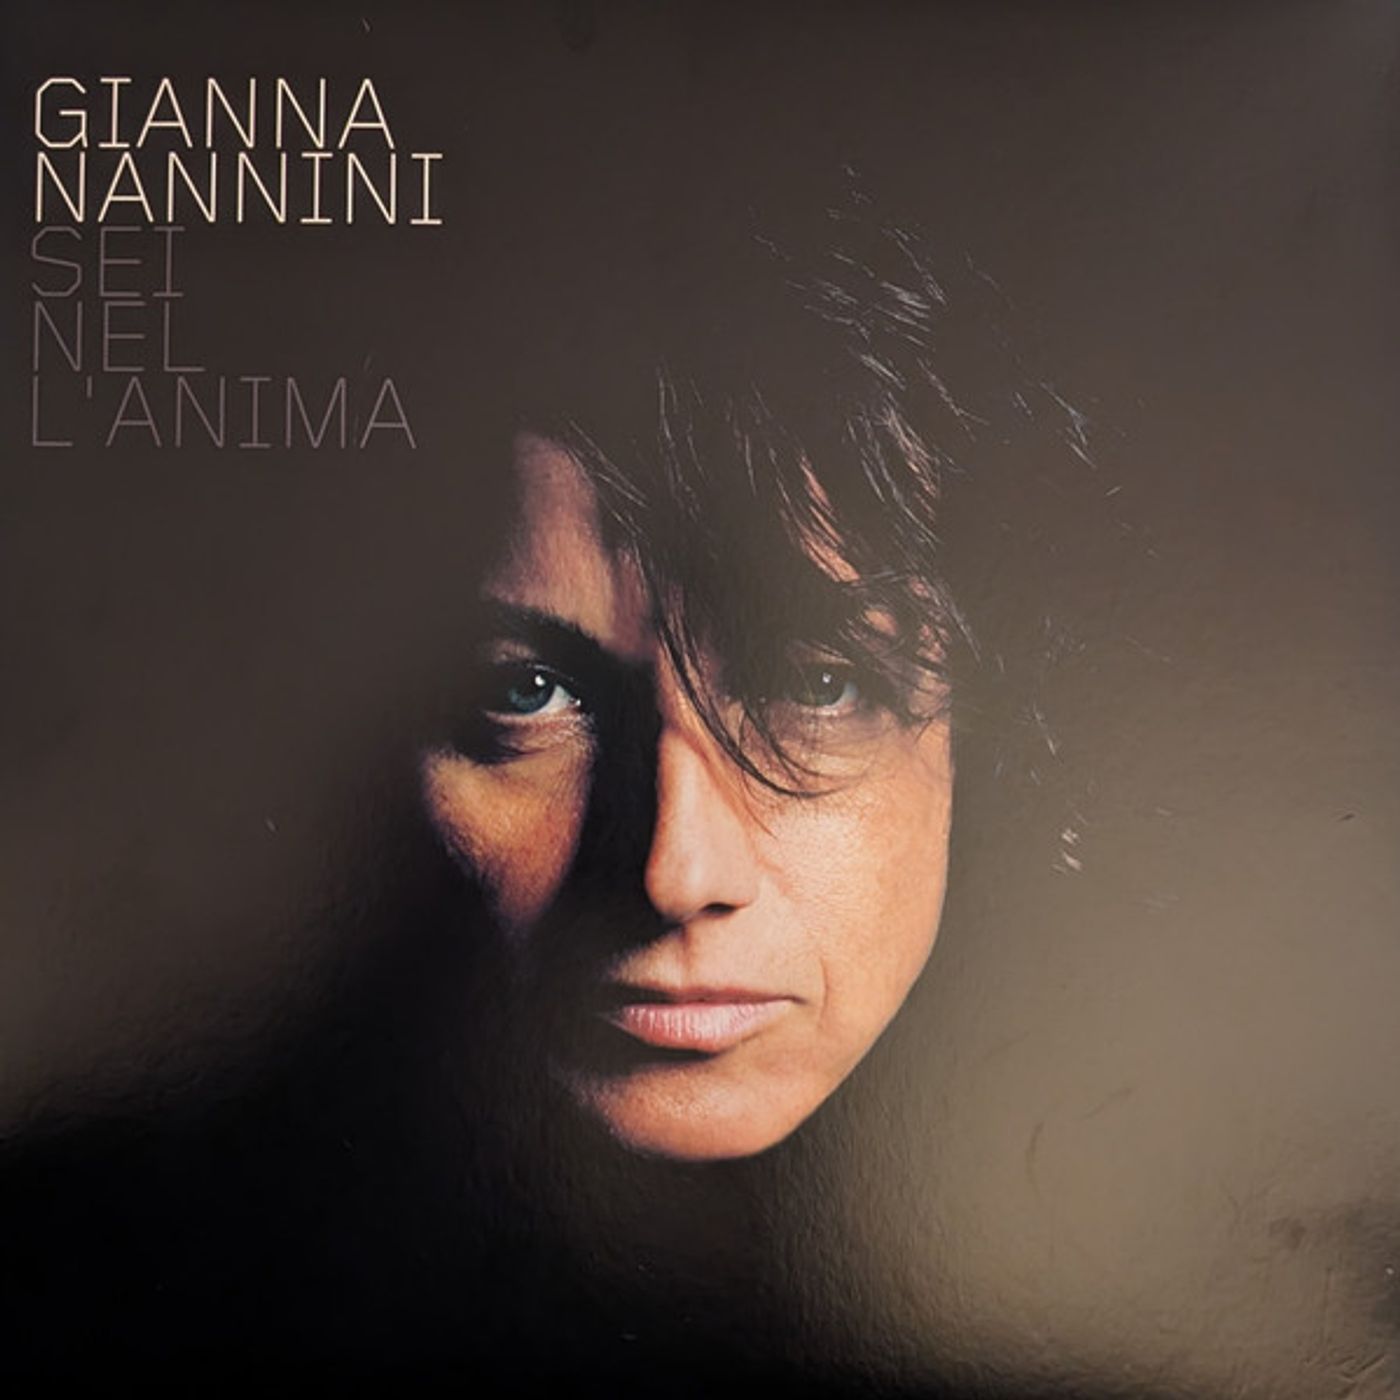 Gianna Nannini lancia "Sei nel l'anima", nuovo progetto con l'uscita di un album dalle sonorità blues e soul, libro, biopic e tour europeo.